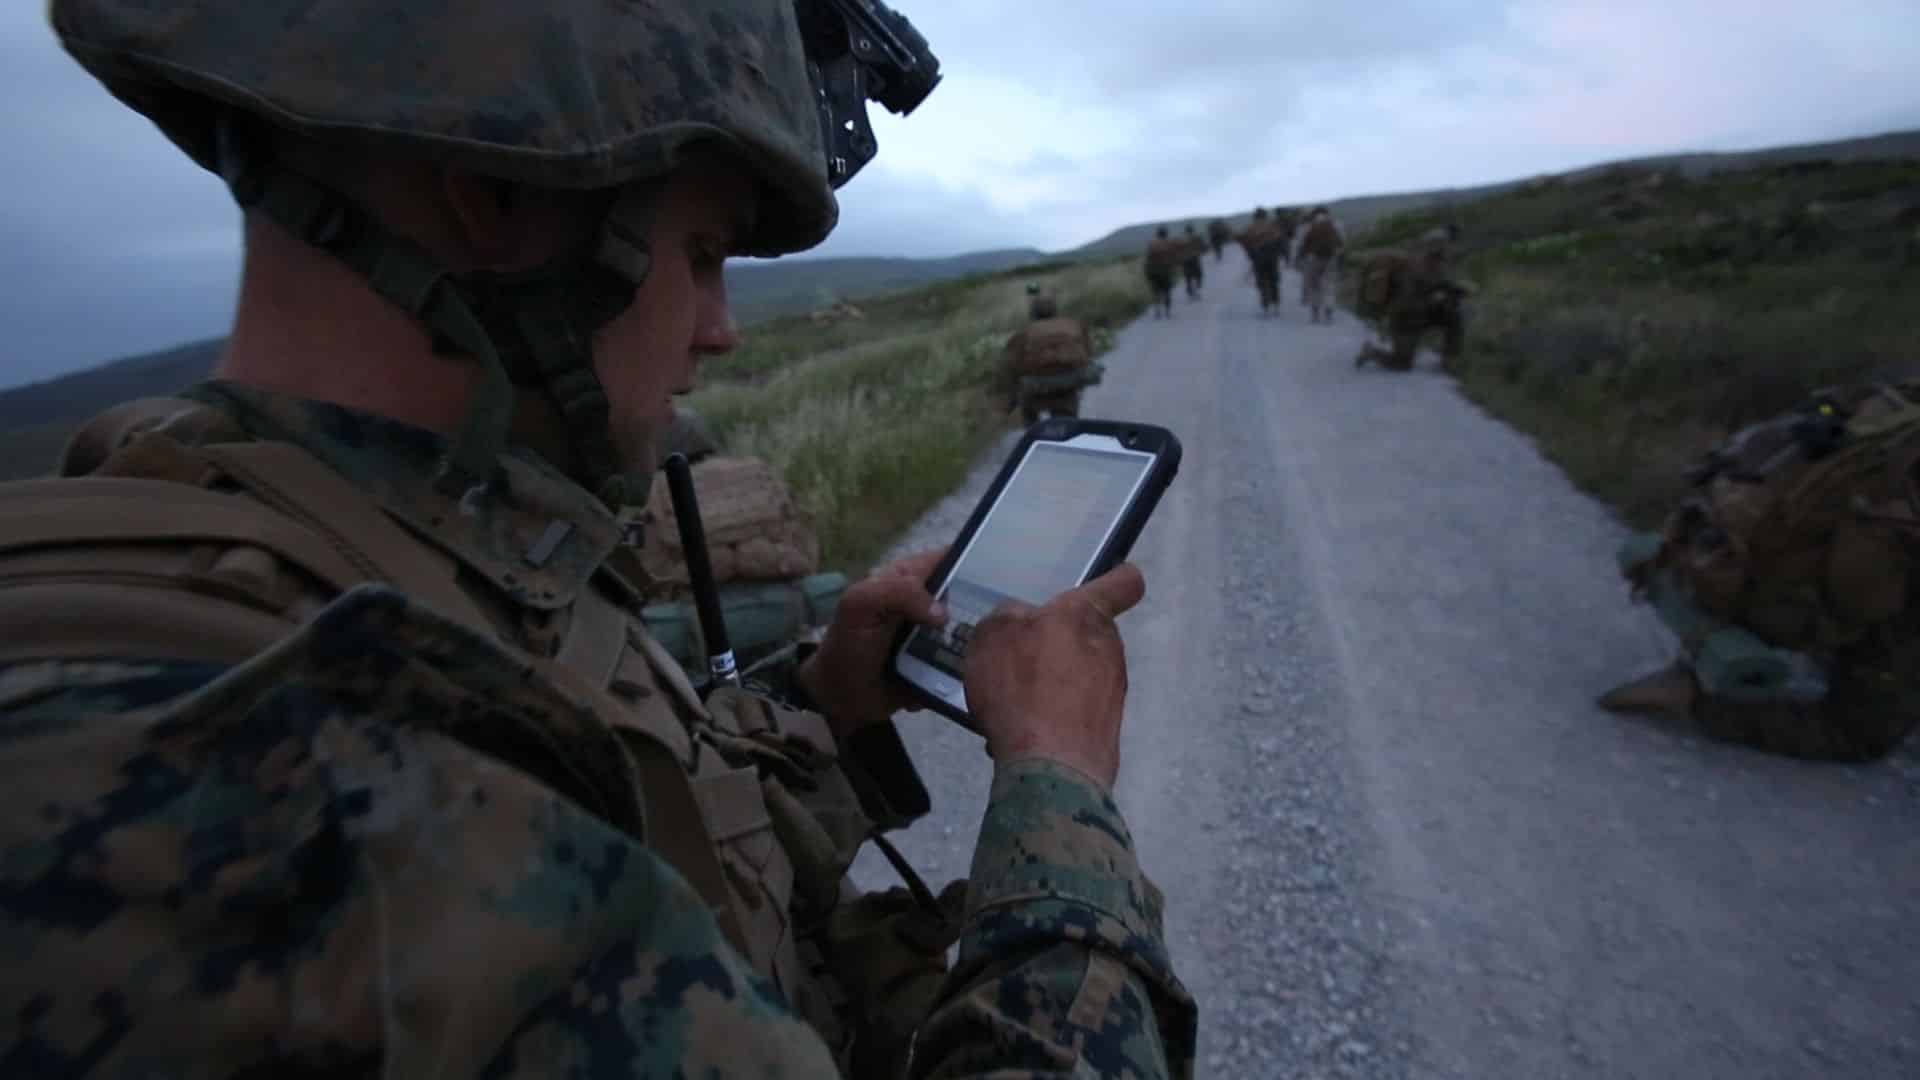 الجيش الأمريكي يستعمل إلكترونيات بمخاطر أمنية معروفة